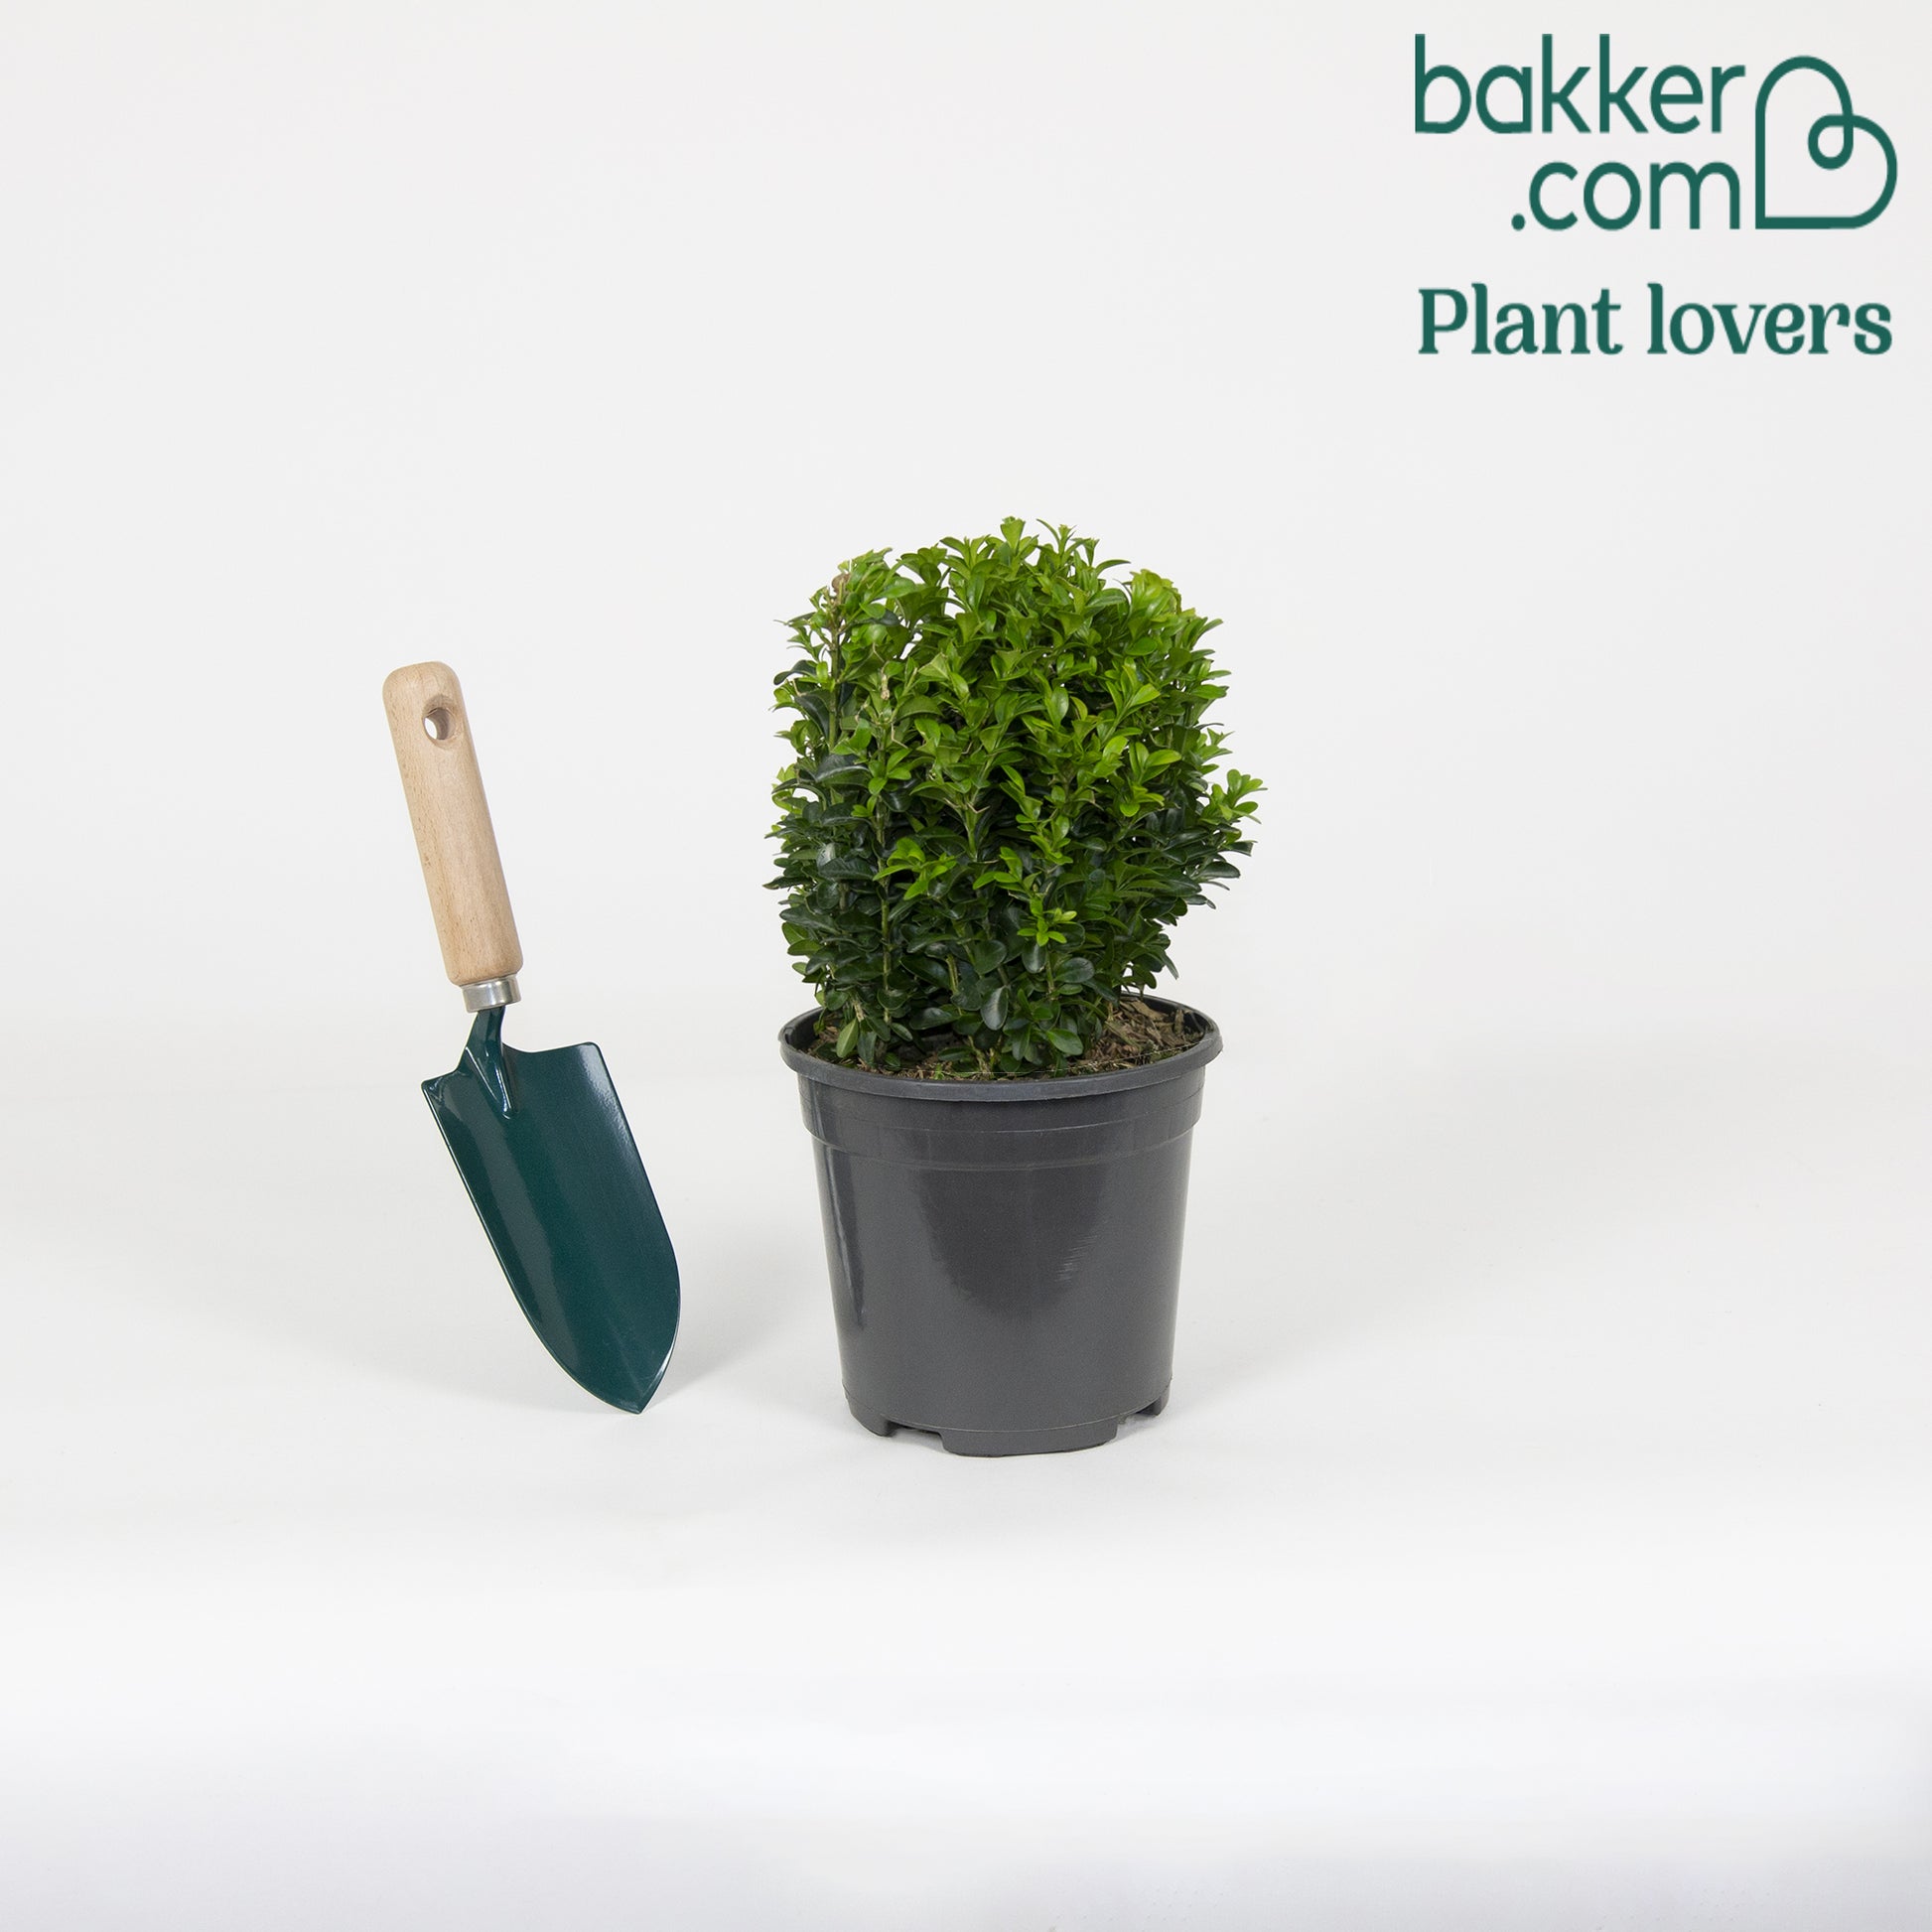 Bakker - Buis boule - Buxus sempervirens - Arbustes et vivaces